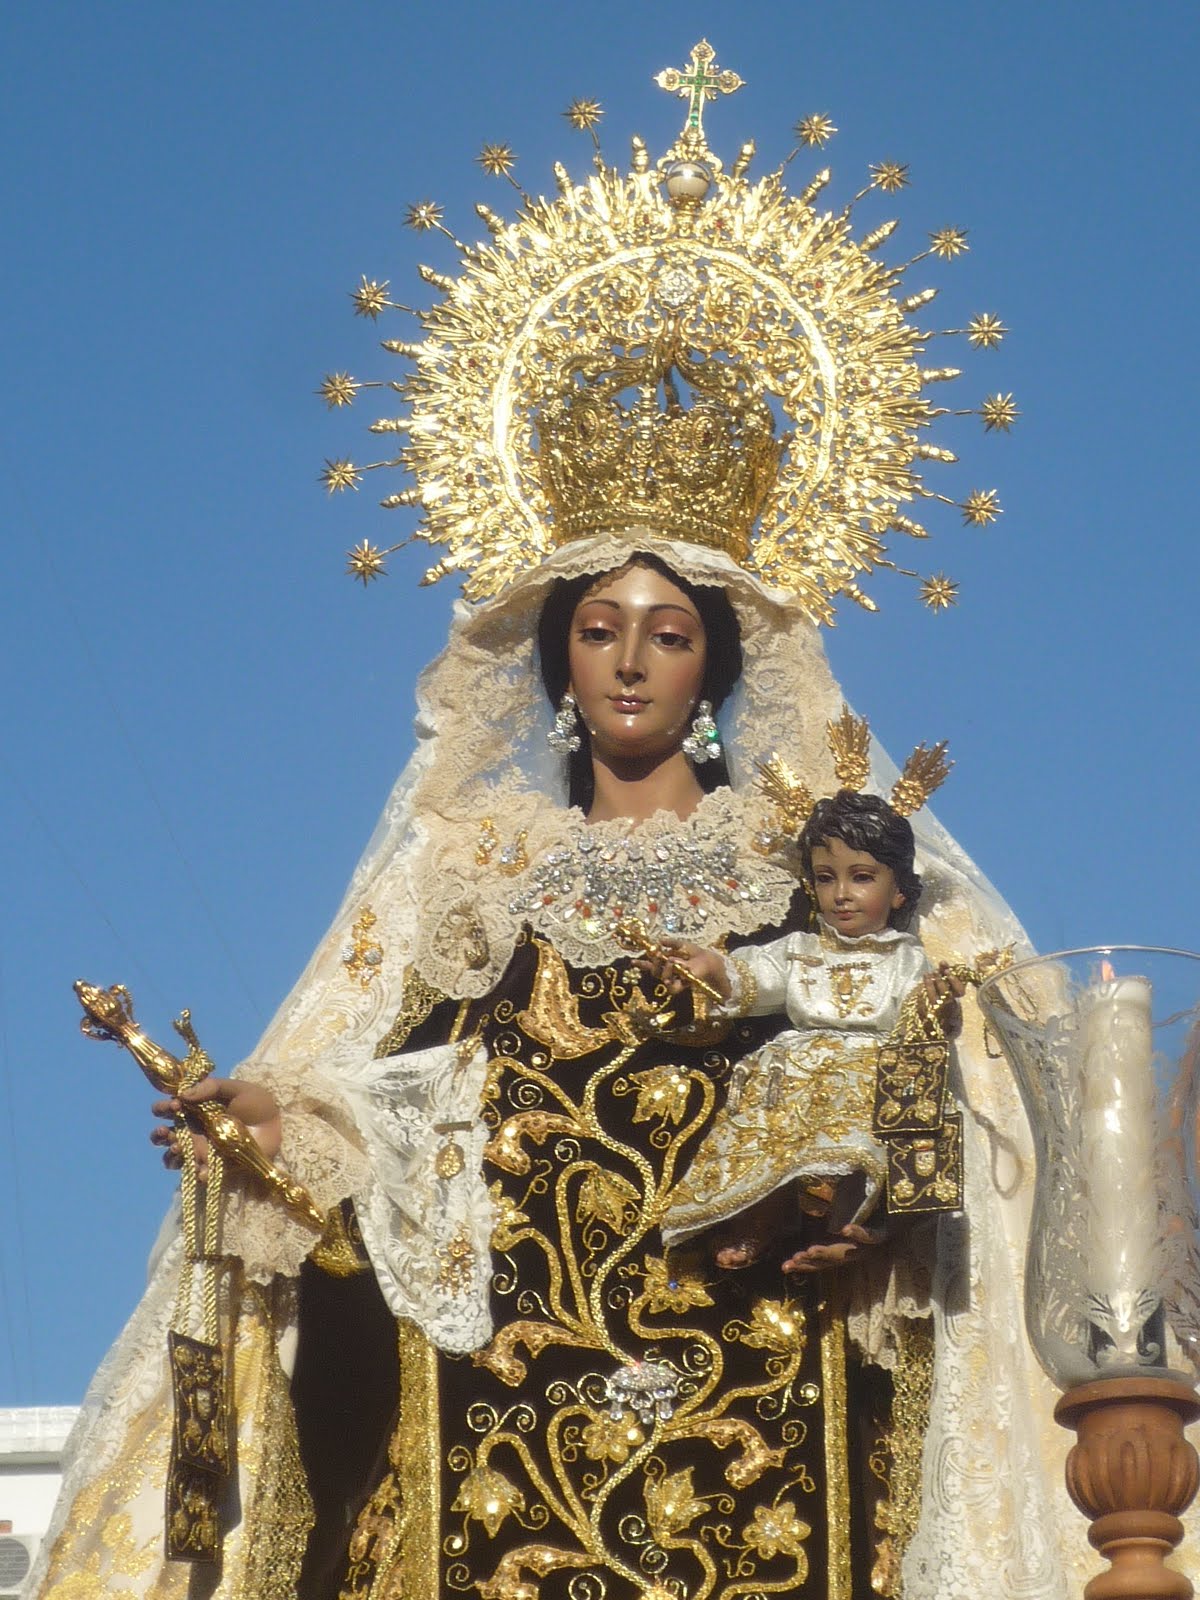 Nuestra Señora del Monte Carmelo